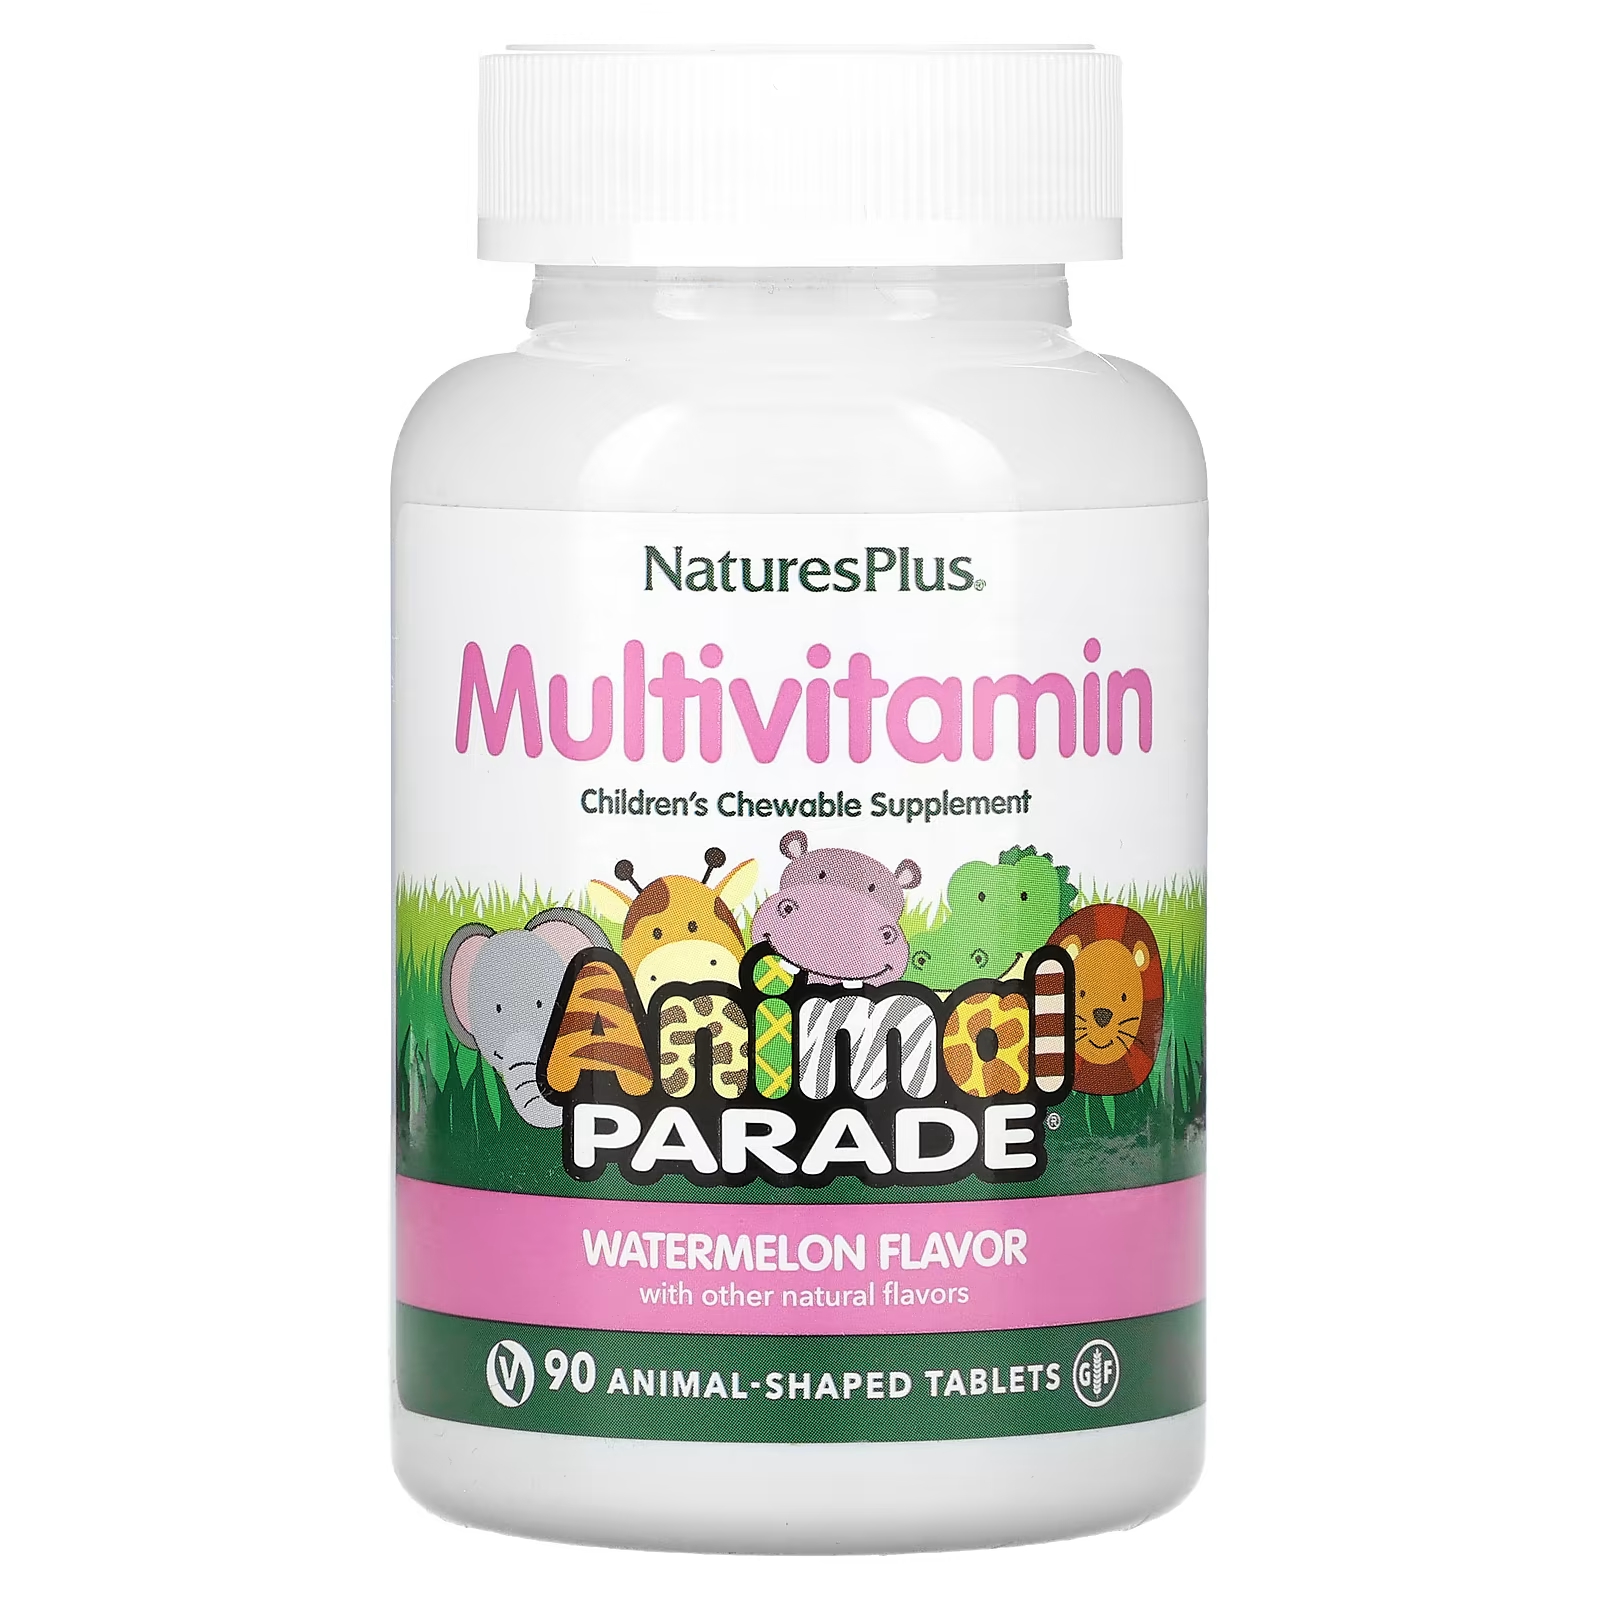 Мультивитамины NaturesPlus для детей со вкусом арбуза, 90 таблеток конфеты живинка со вкусом арбуза 250г konti